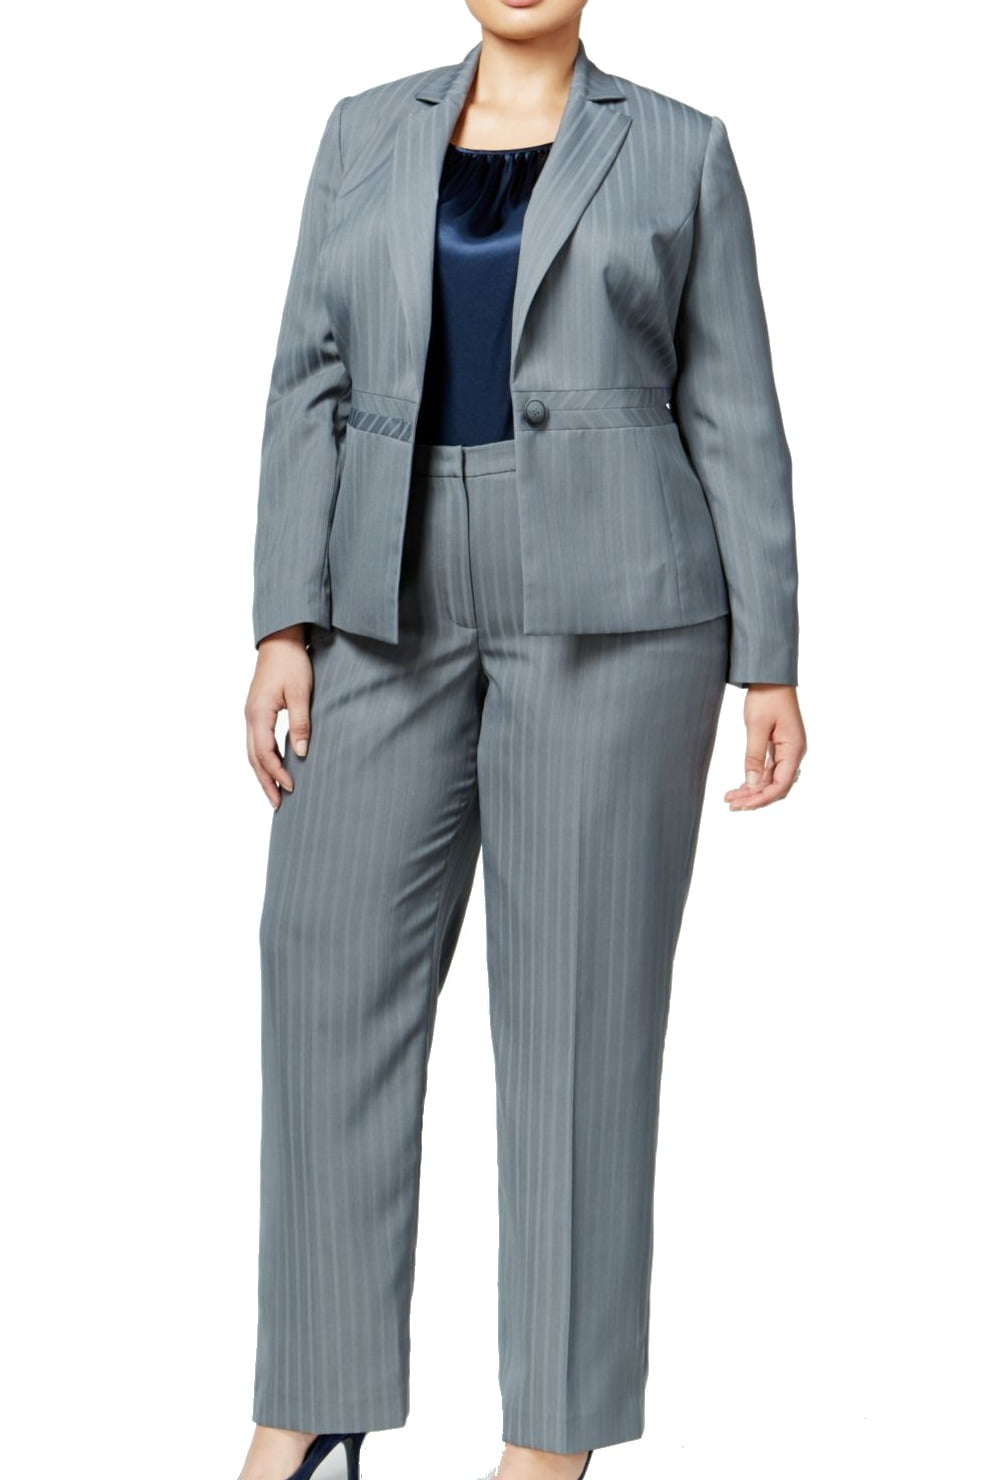 Le Suit NEW Gray Stone Women's Size 14W Plus 3-Piece Pant Suit Set ...